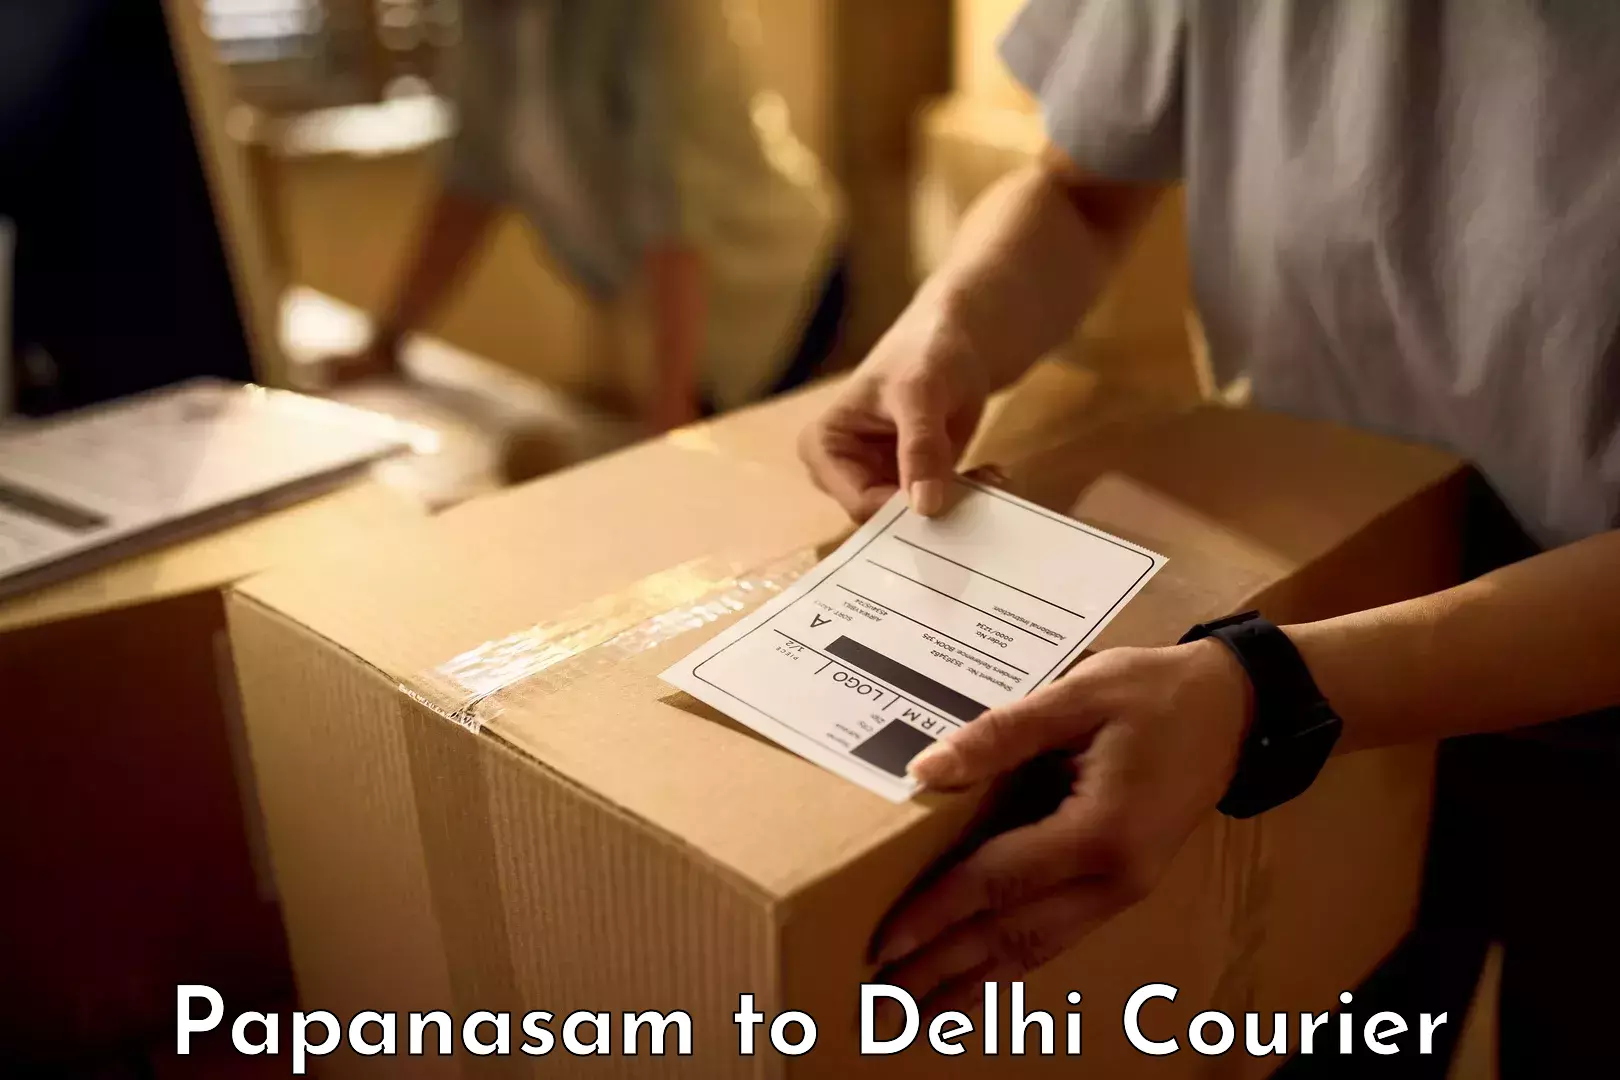 Baggage shipping service Papanasam to IIT Delhi